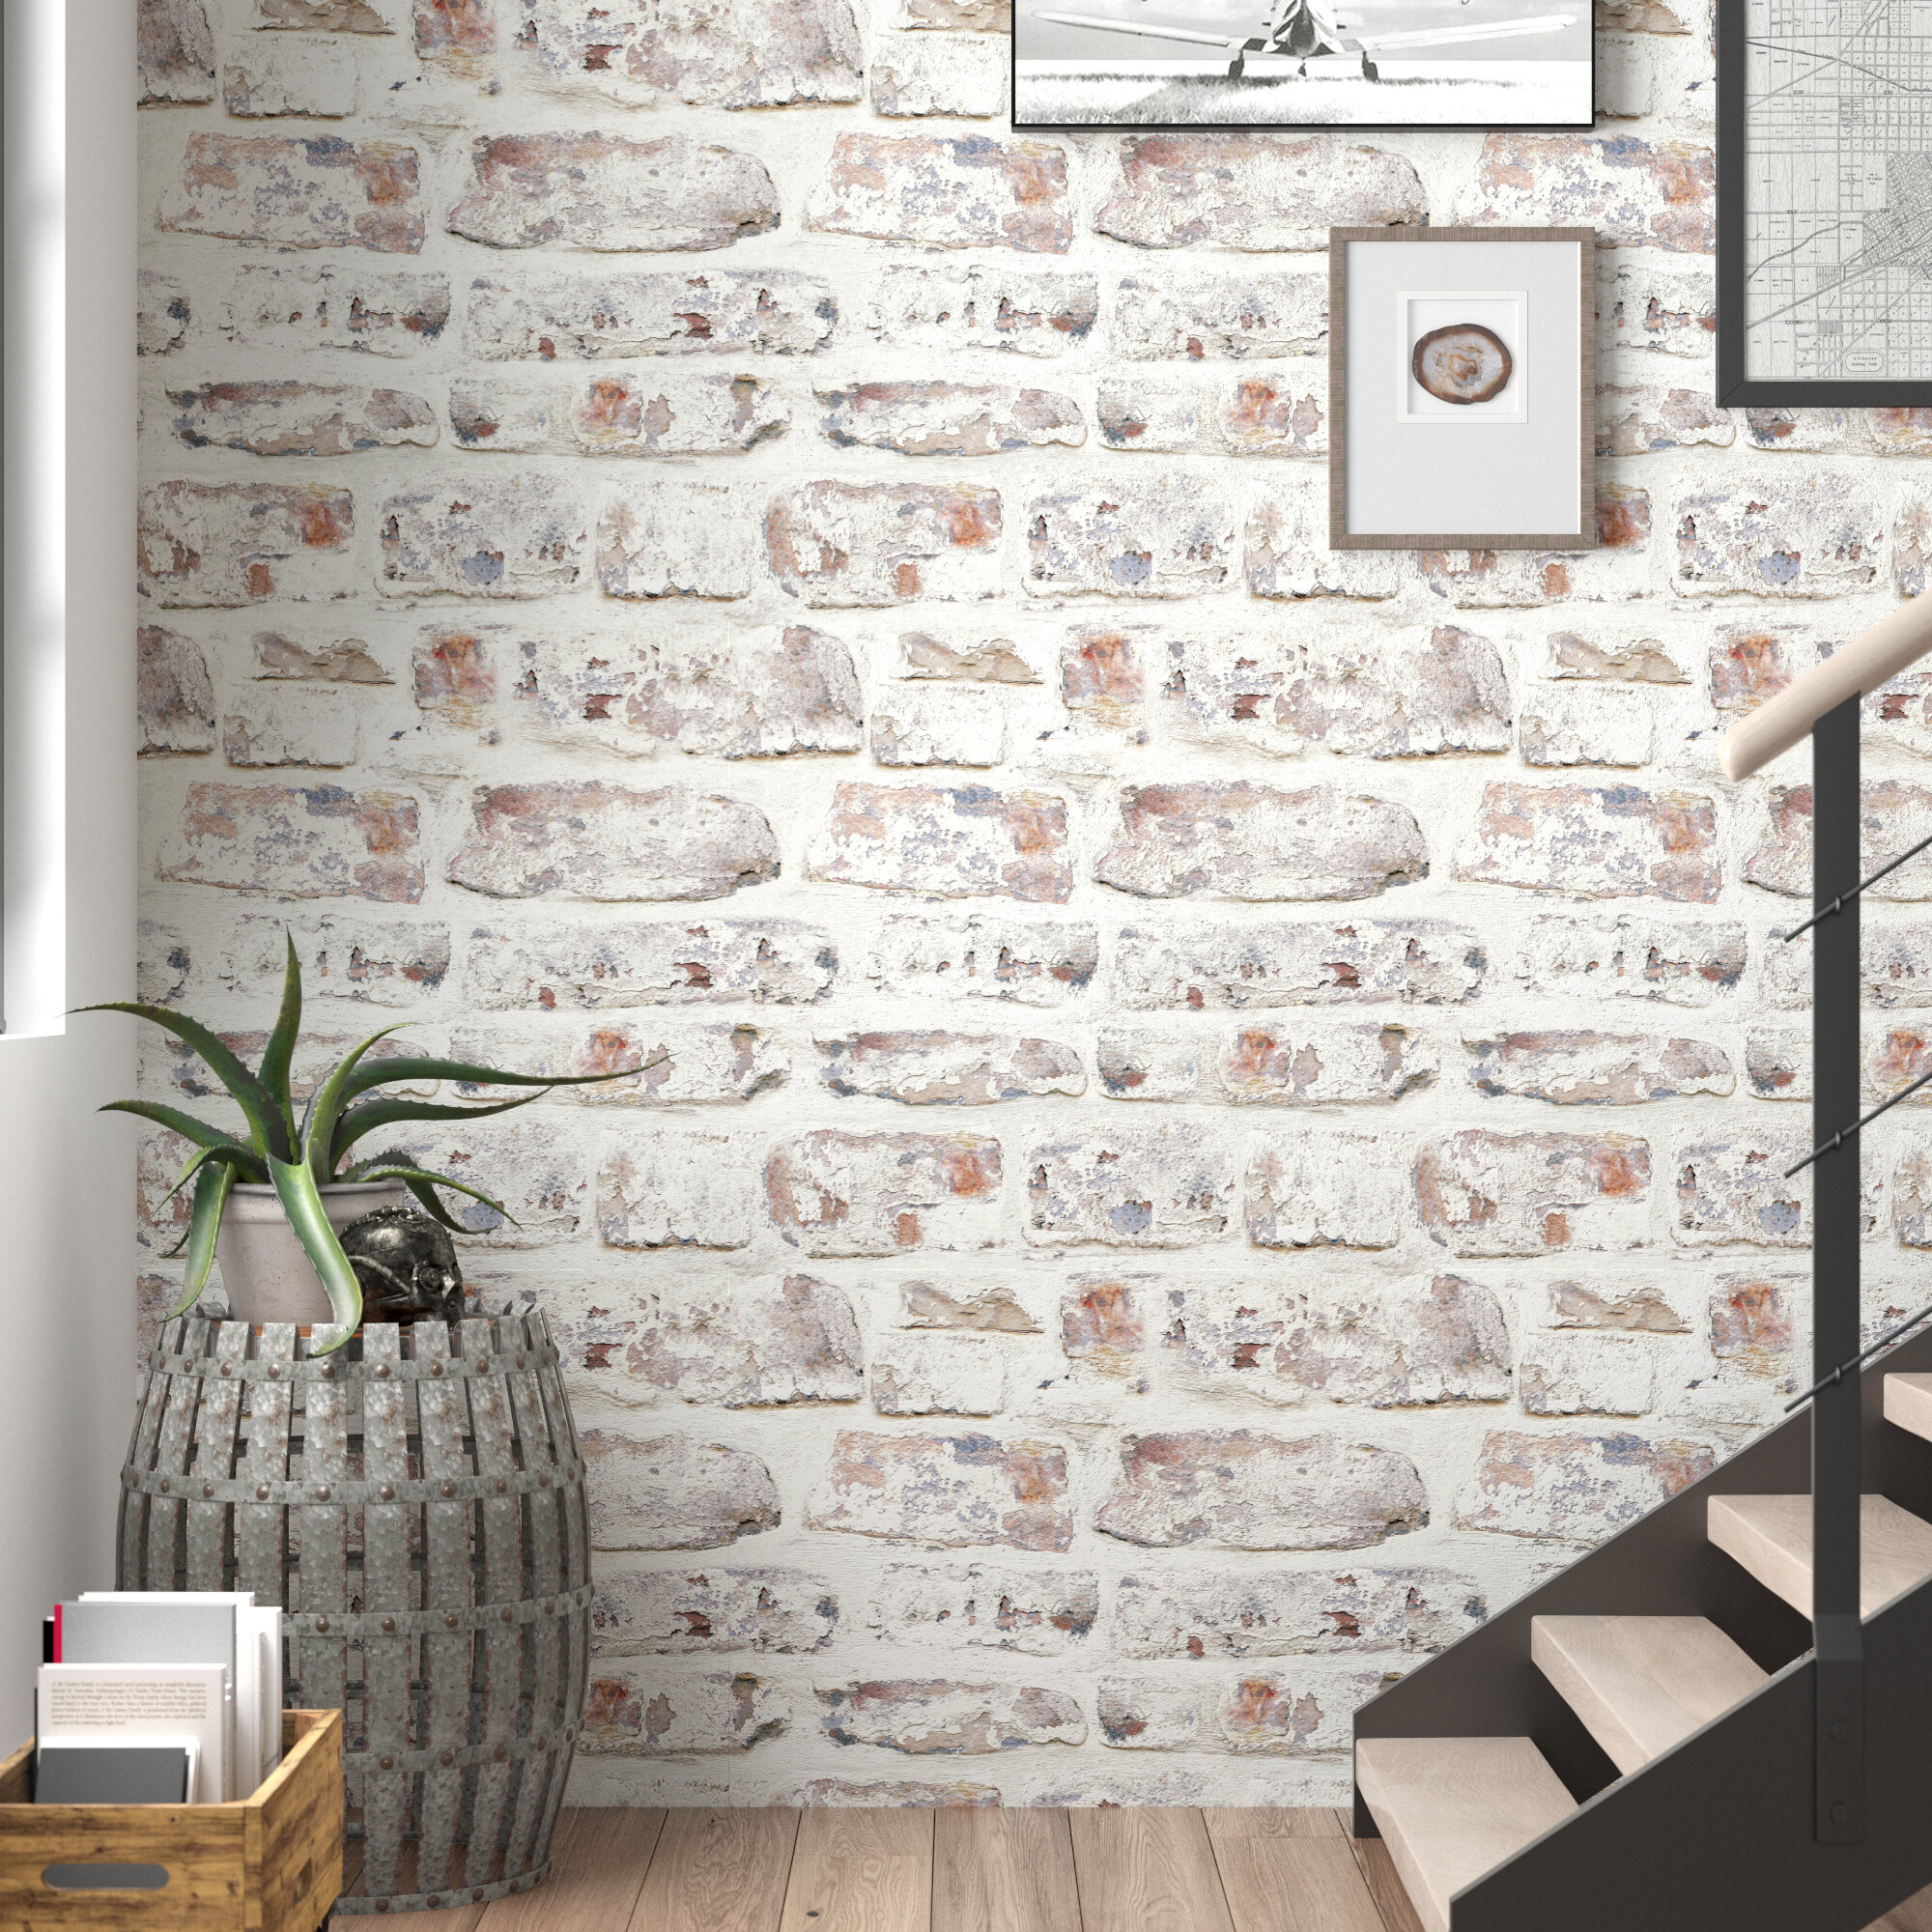 Williston Forge Eichelberger Brick Wallpaper & Reviews | Wayfair